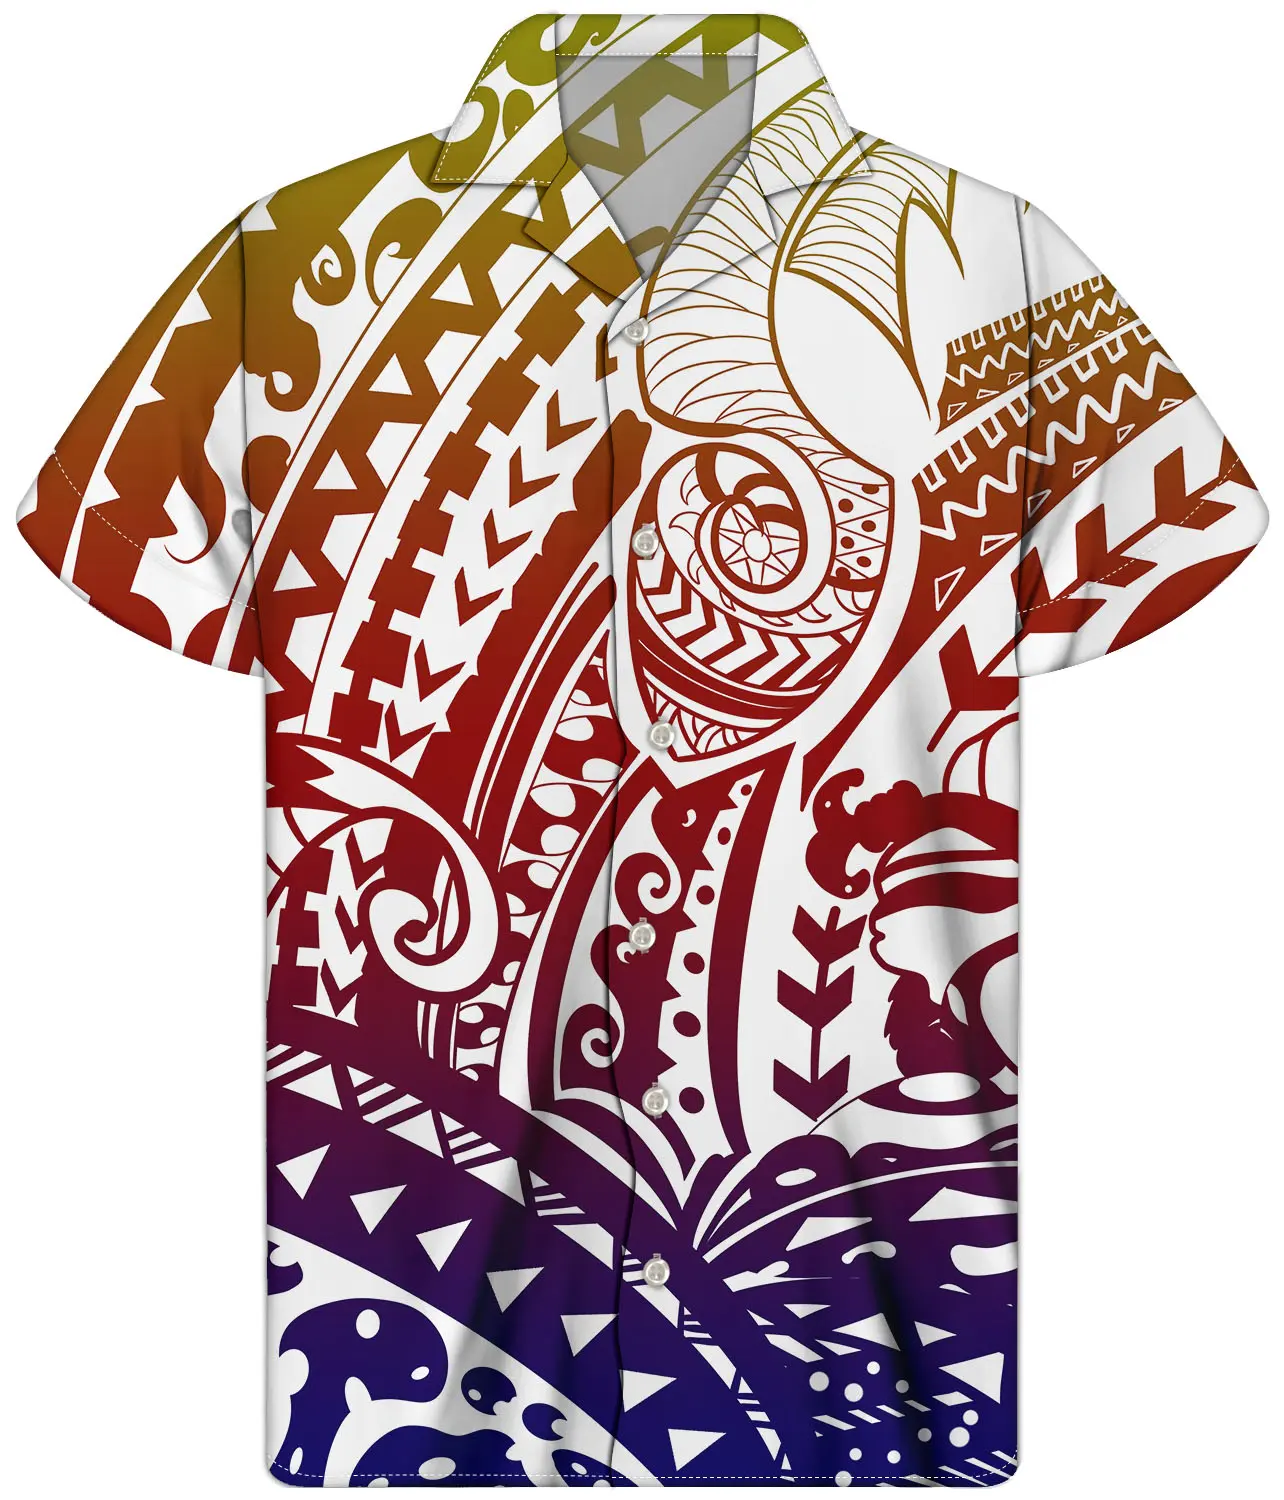 เสื้อพิมพ์ลาย Samoan เผ่าโพลีนีเซีย,เสื้อชายหาดฮาวายปกคิวบาสำหรับผู้ชายสีแดง/เทา/น้ำเงิน/น้ำตาล